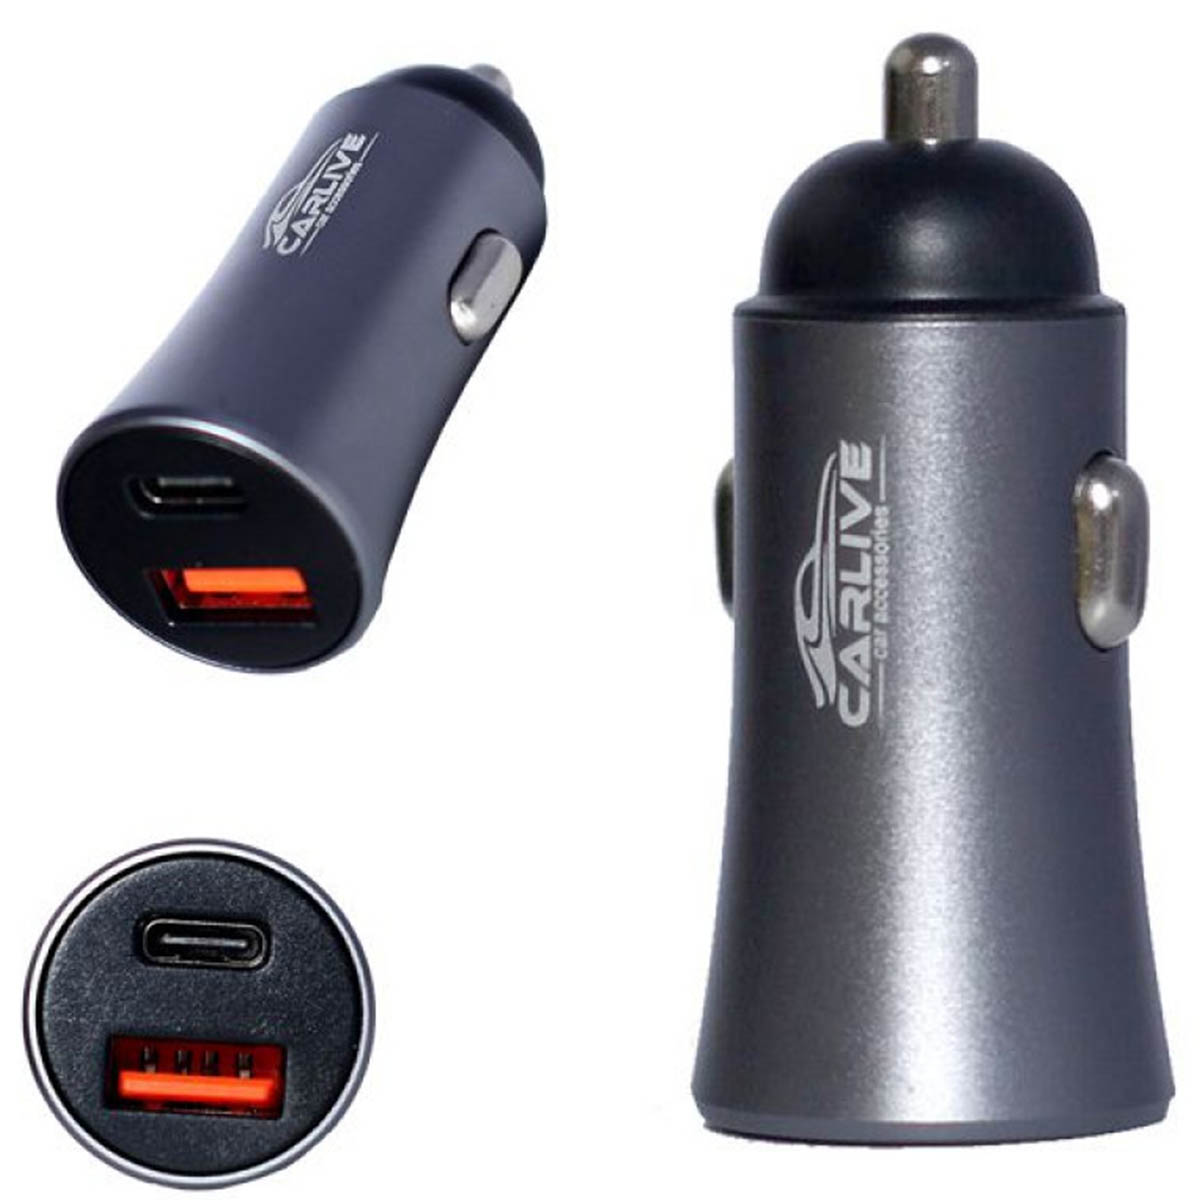 АЗУ (Автомобильное зарядное устройство) CARLIVE MR67, 1 USB QC 3.0, 1 Type-C, цвет серебристый